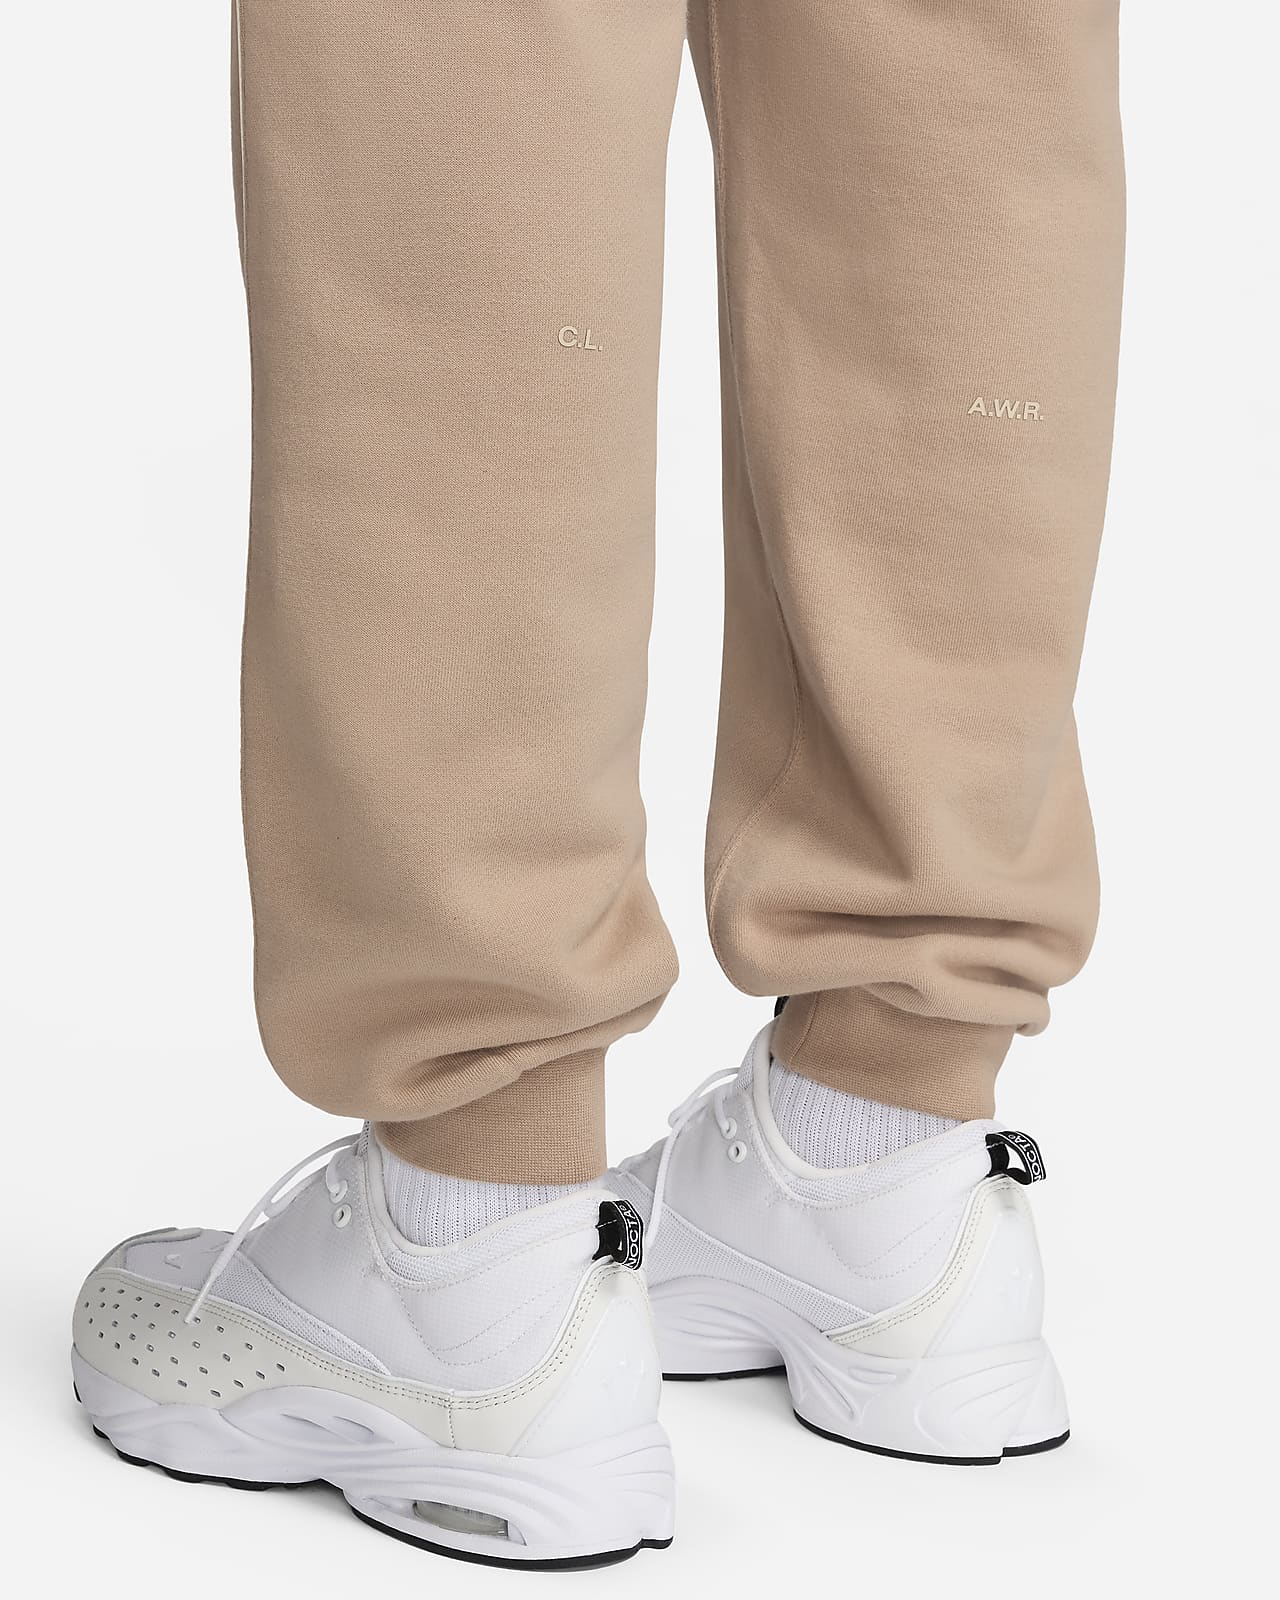 Pants and jeans Nike Nocta Men's Fleece Pants Blue Void/ White